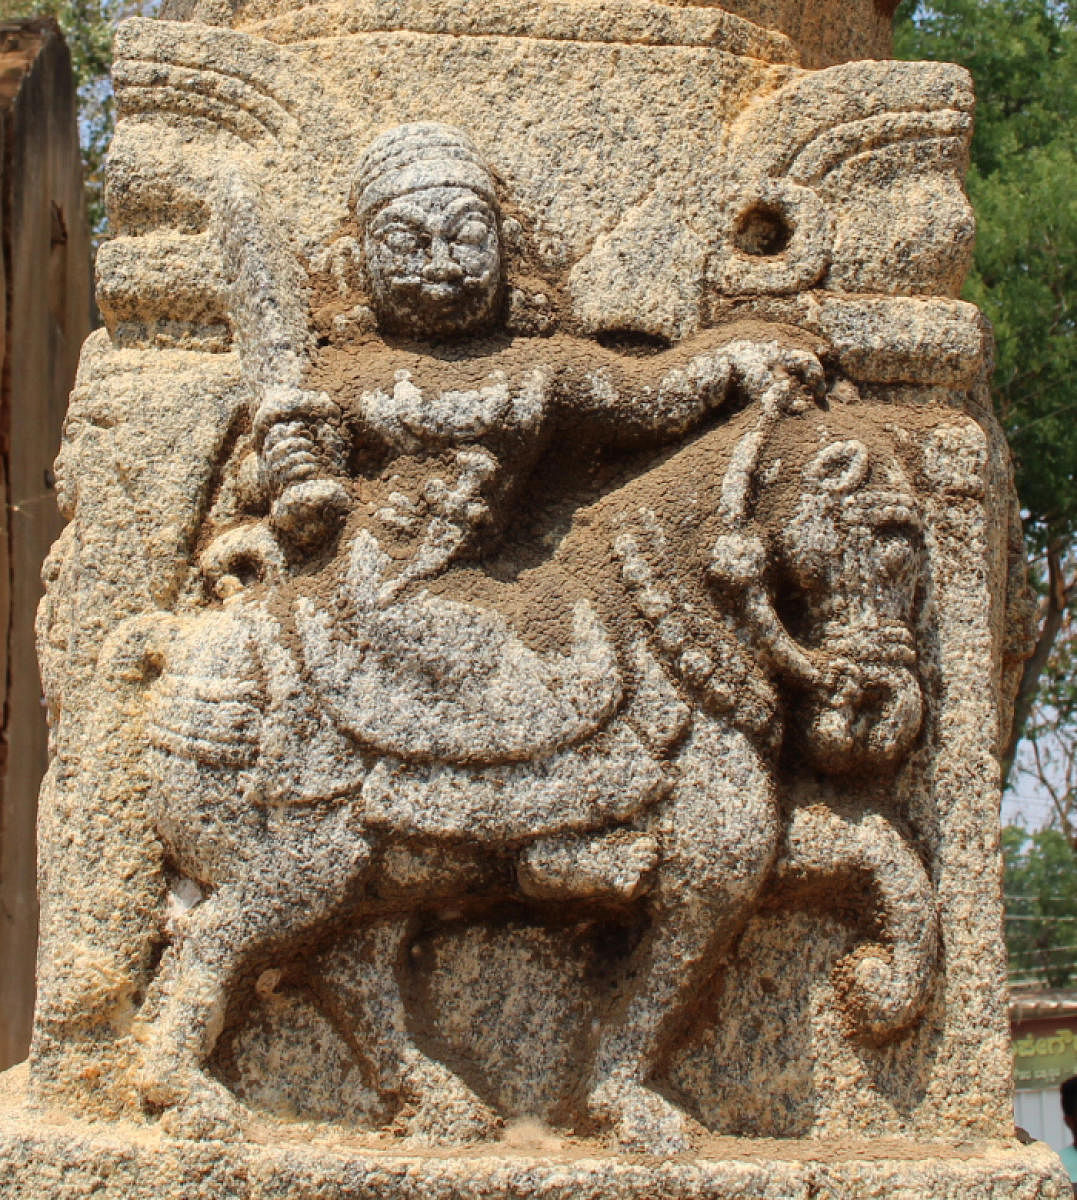 ಕೆಂಪಸಾಗರದ ಈಶ್ವರ ಗುಡಿಯಲ್ಲಿ  ಹಿರಿಯ ಕೆಂಪೇಗೌಡರ ಉಬ್ಬುಚಿತ್ರ